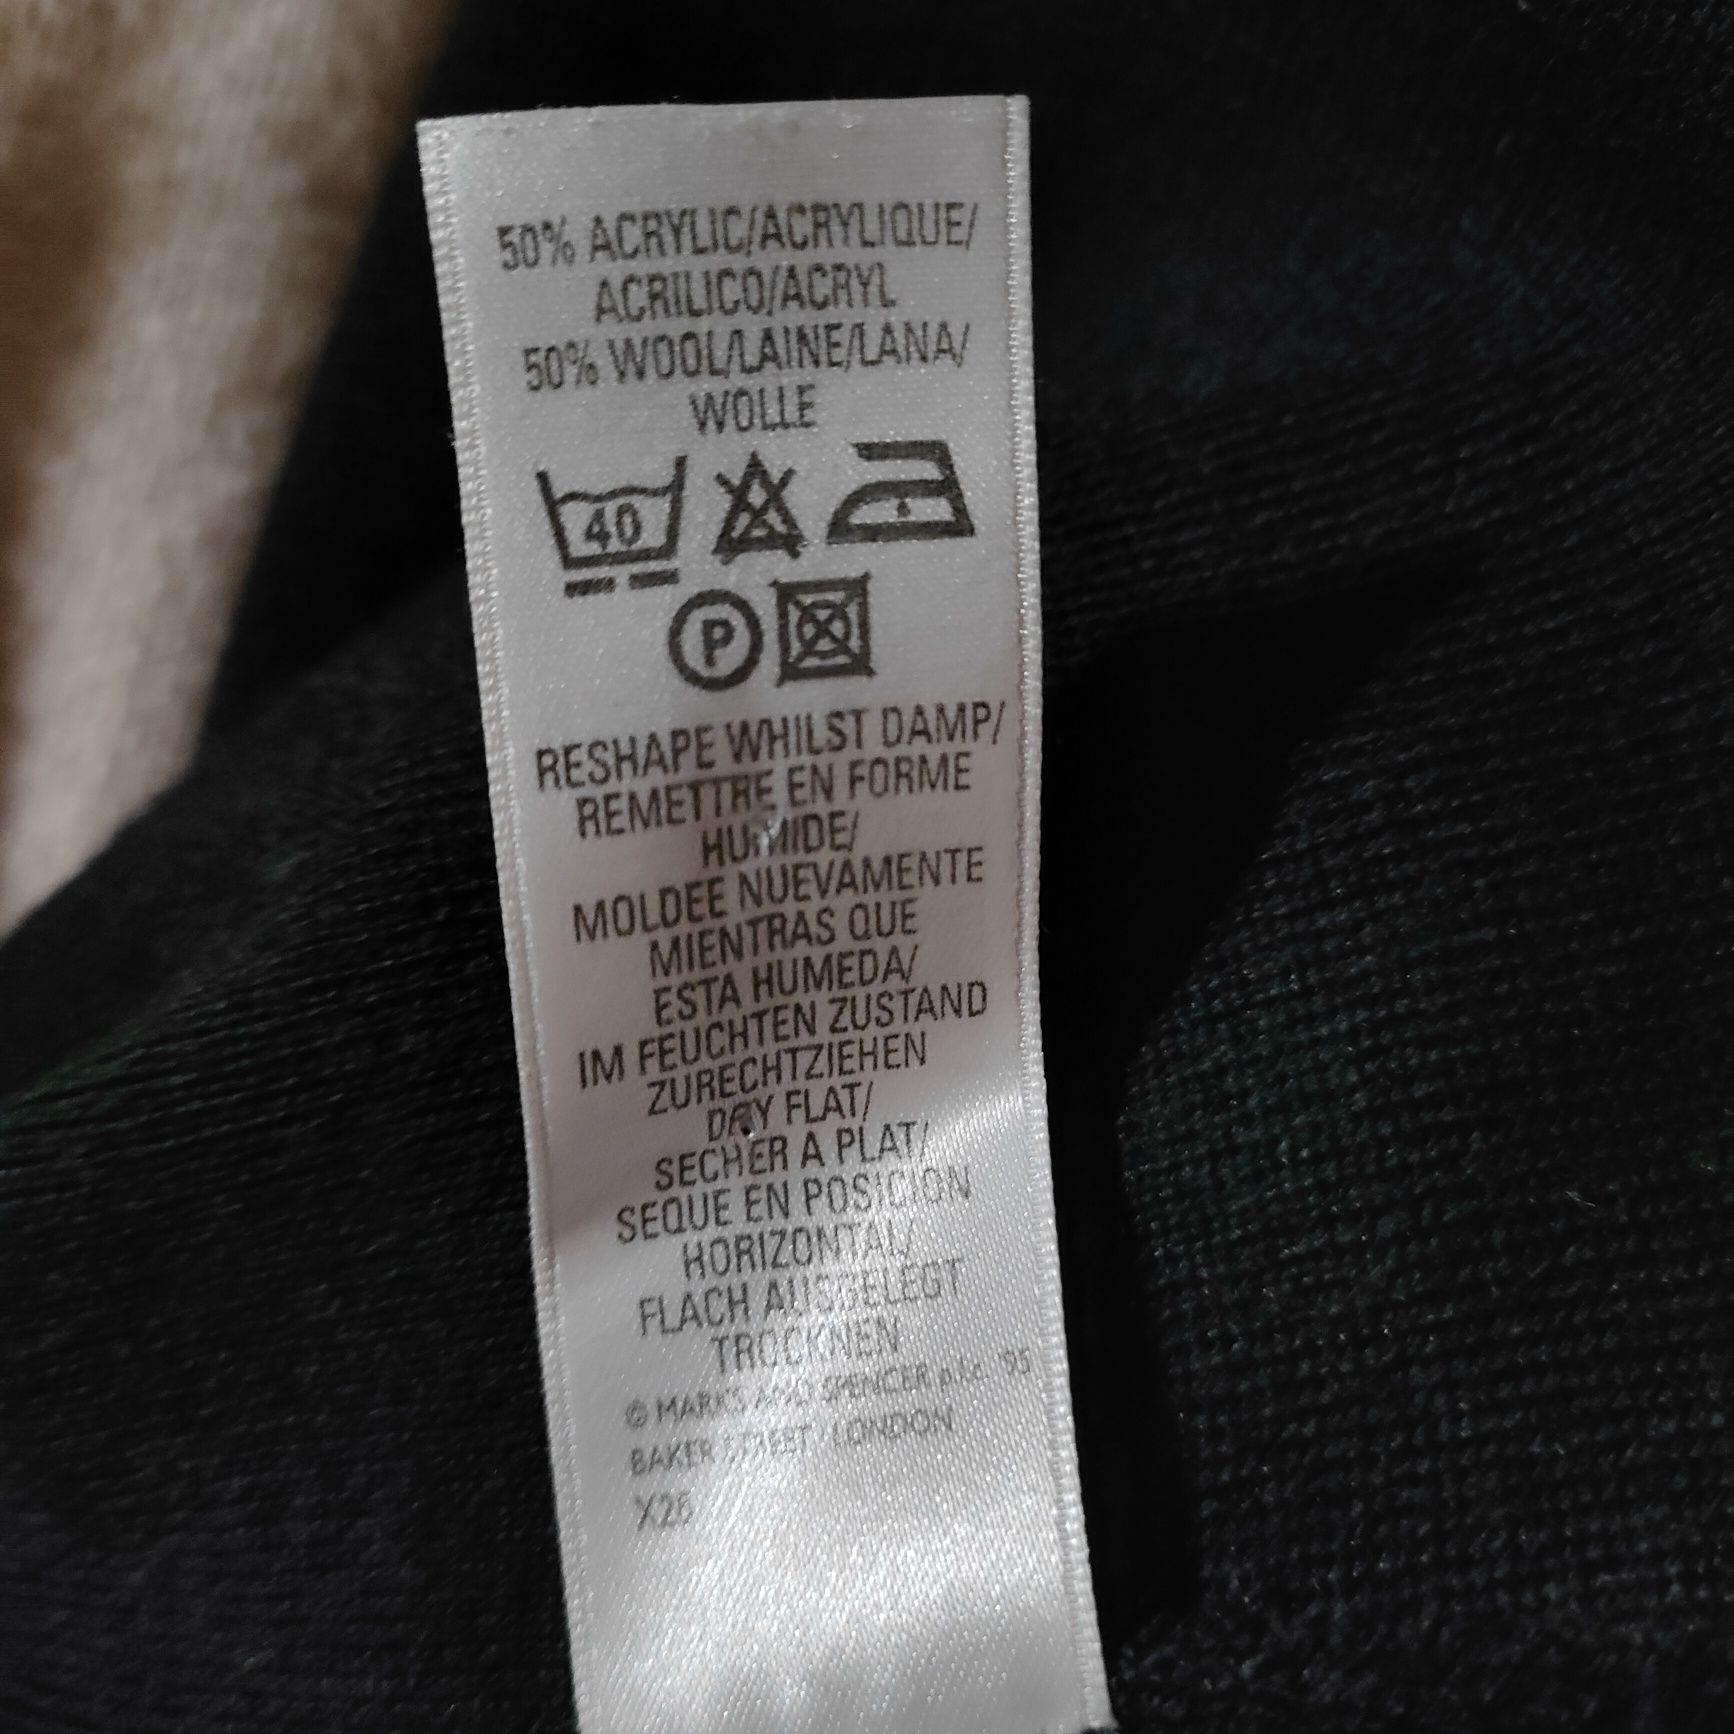 Marks&Spencer świetny sweter L/XL z szalem 50% wełna